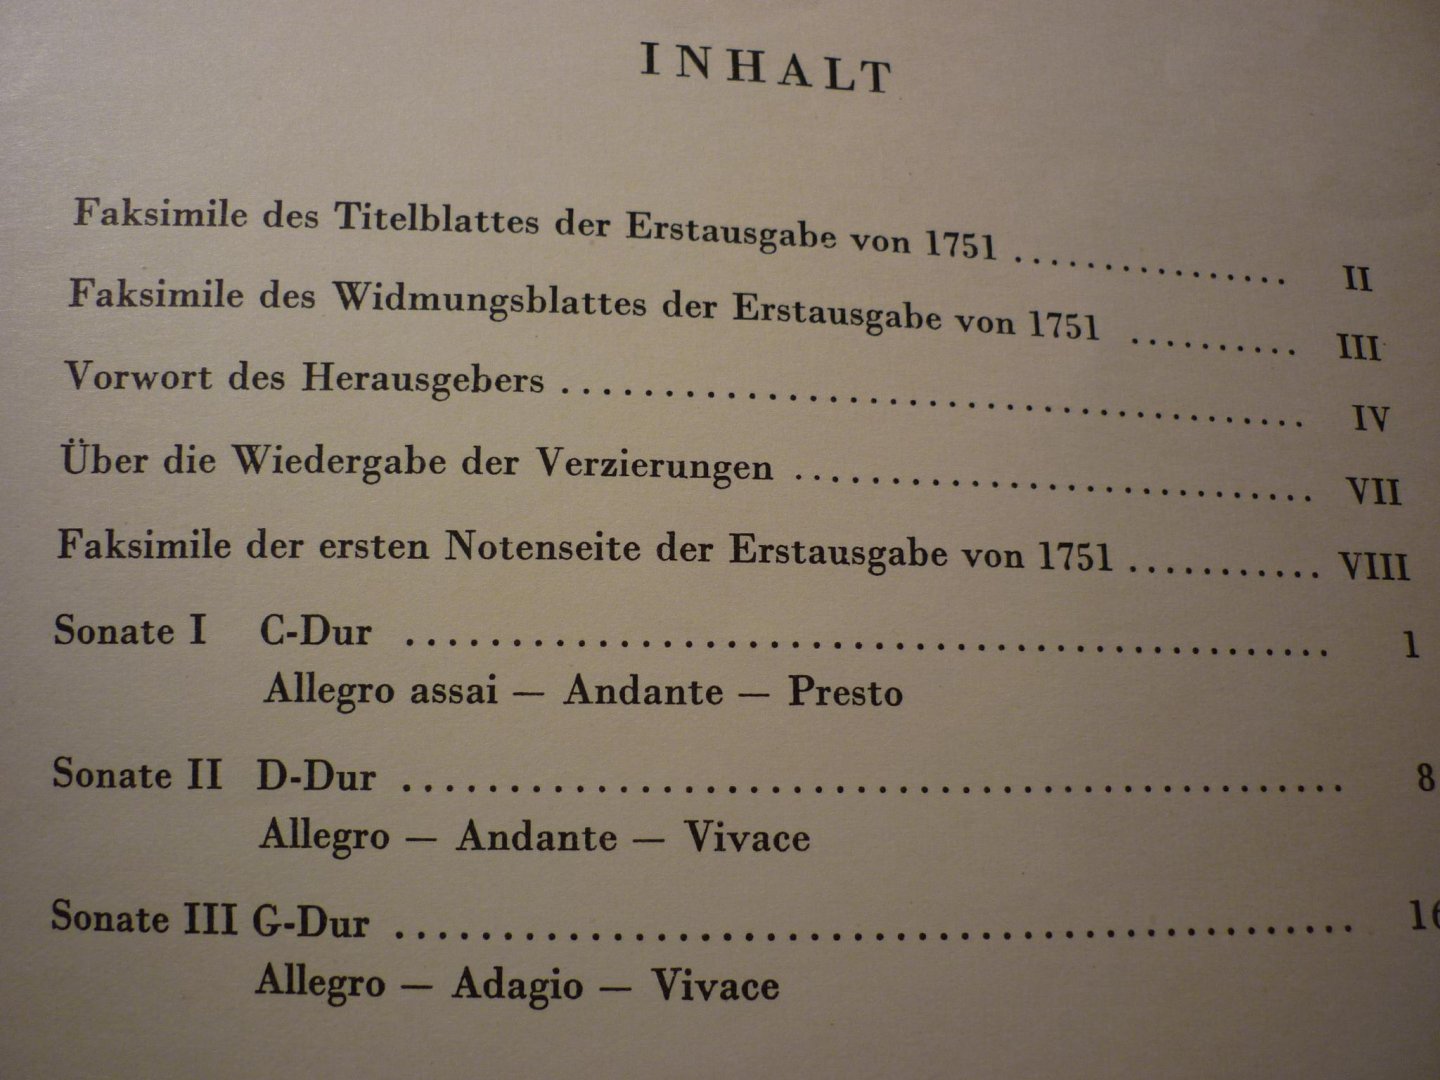 Ritter; Johann Christoph - Drei Sonaten fur Cembalo, nach der Erstausgabe von 1751 herausgegeben - Vorwort Erwin R. Jacobi